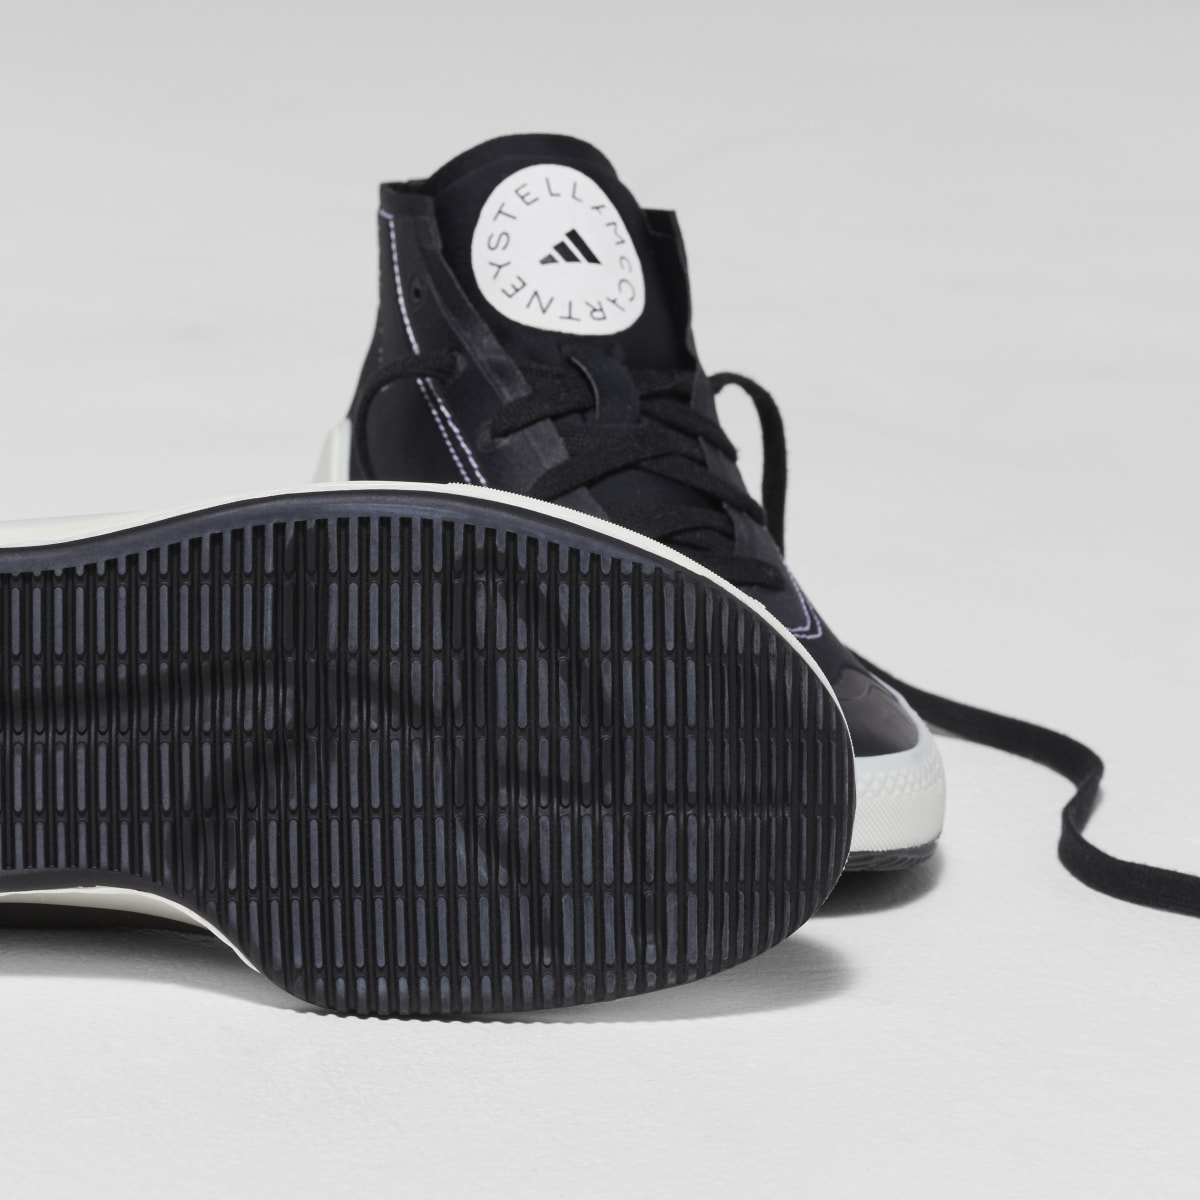 Adidas by Stella McCartney Treino Mid-Cut Shoes. 16